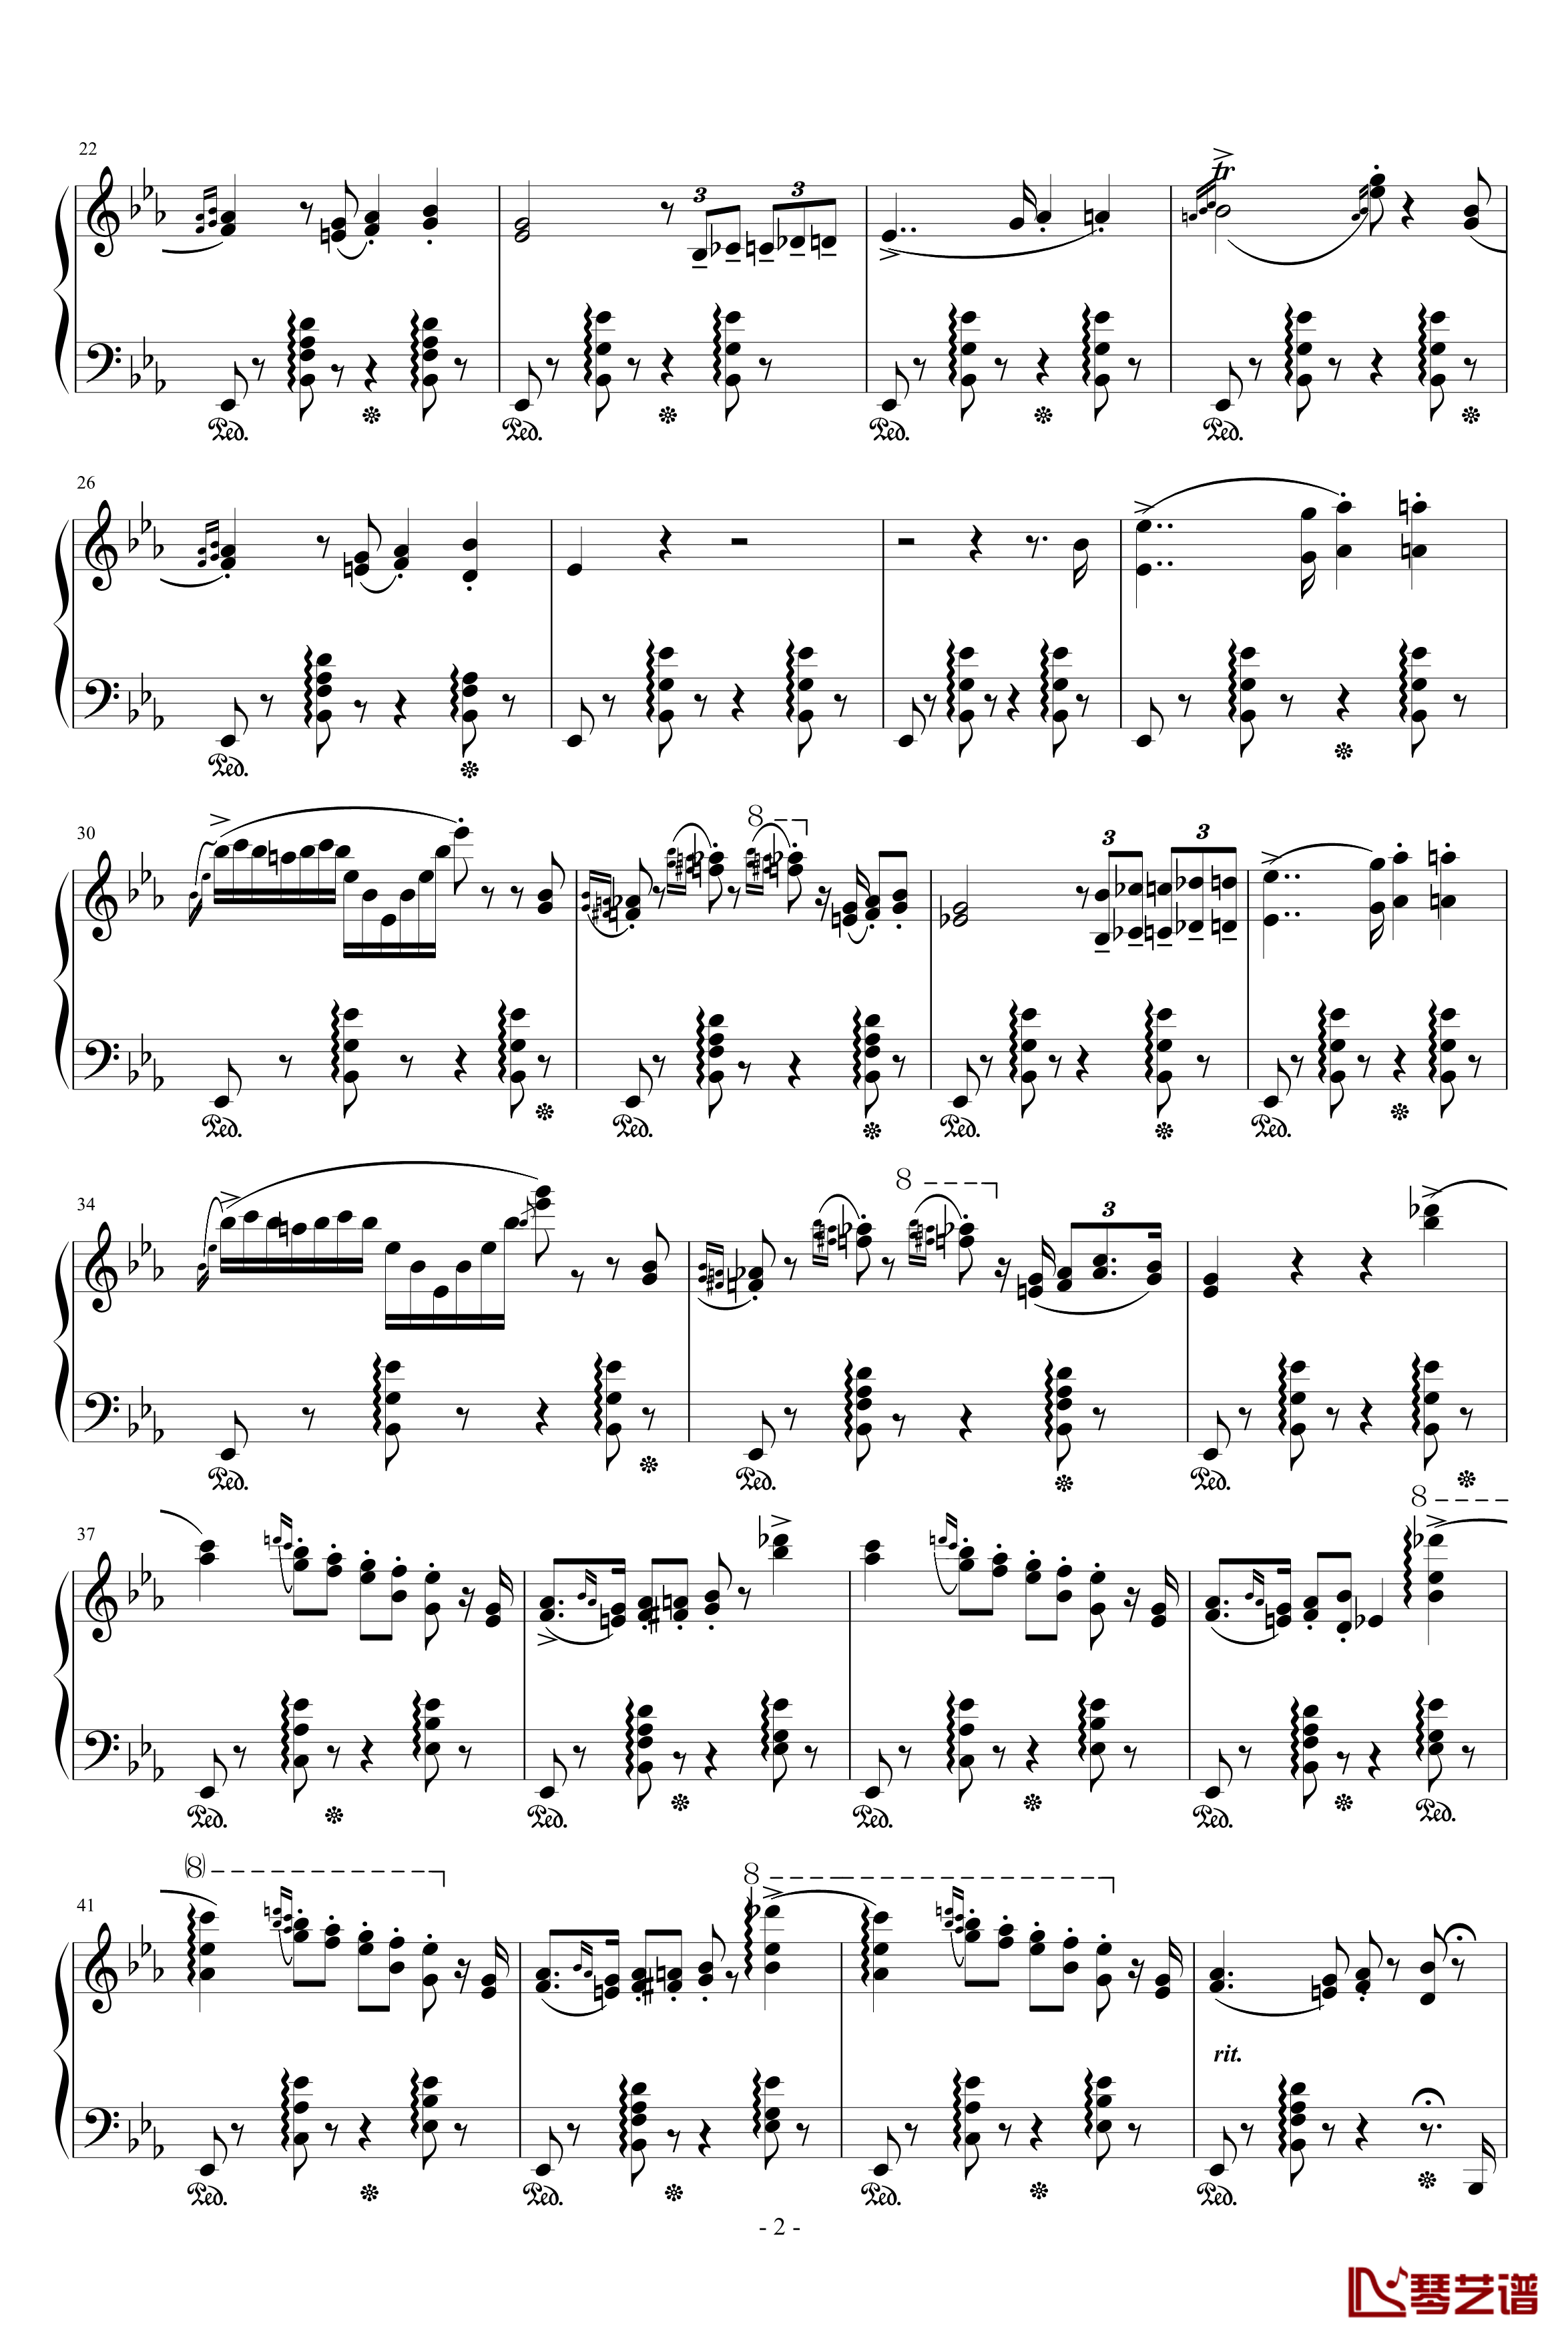 匈牙利狂想曲第9号钢琴谱-19首匈狂里篇幅最浩大、技巧最艰深的作品之一-李斯特2